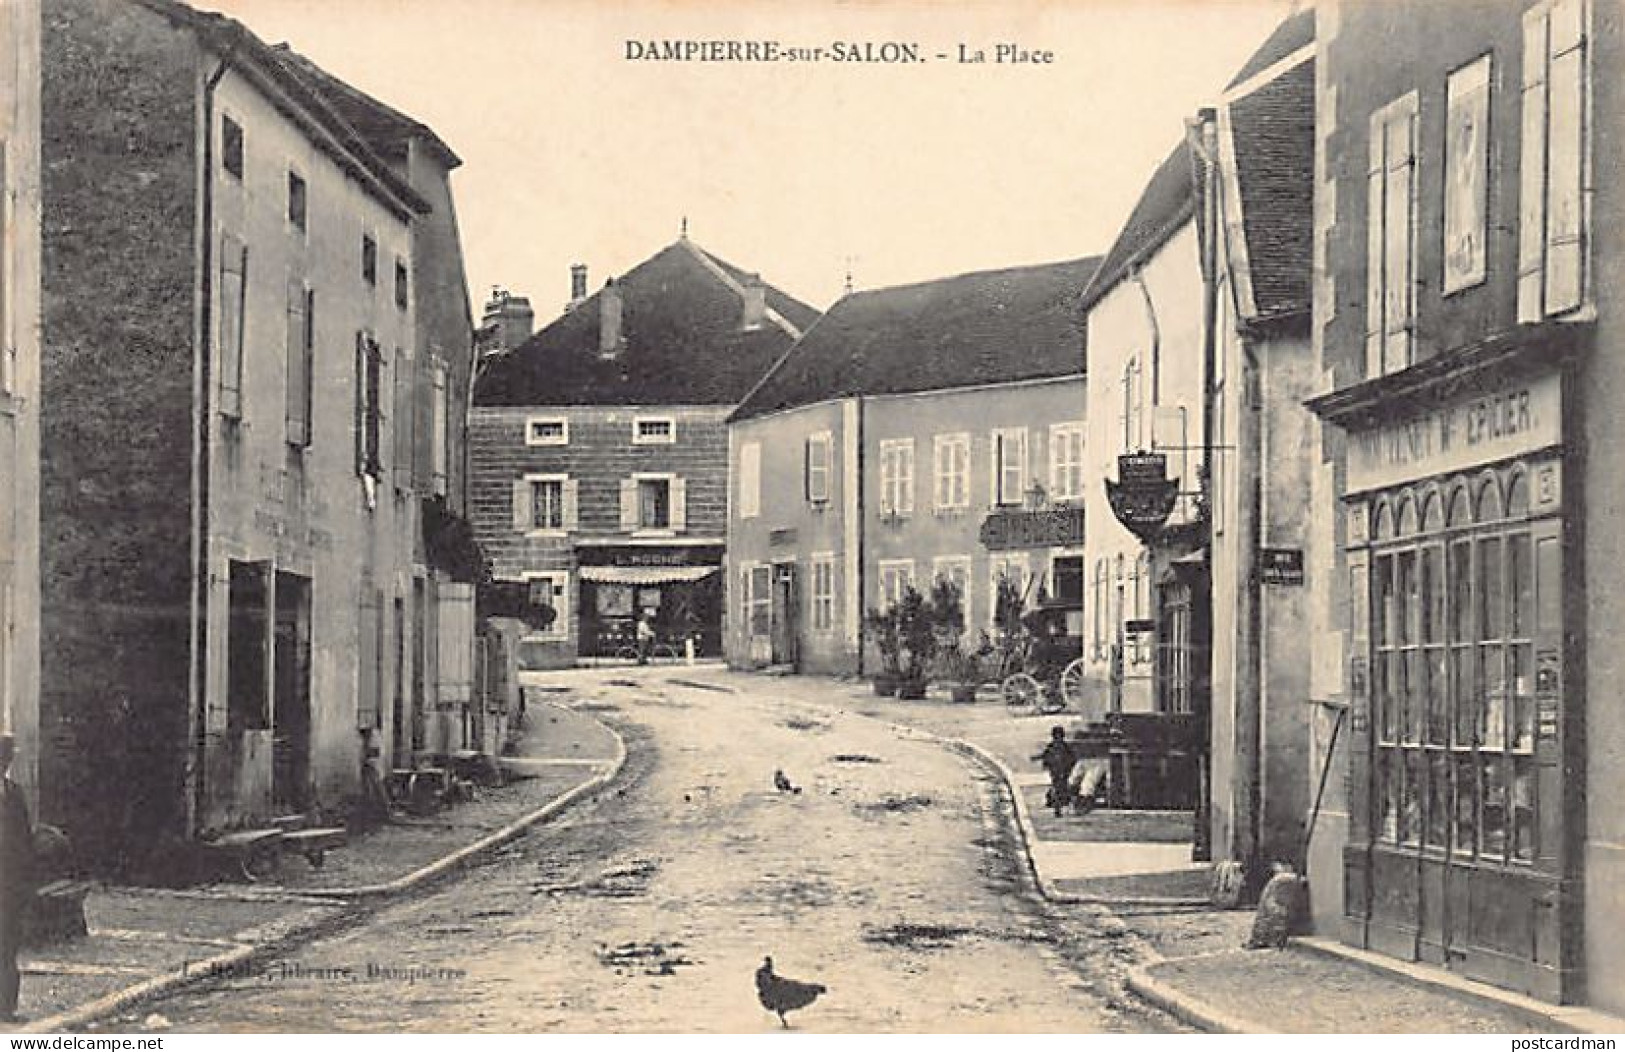 Dampierre-sur-Salon (70) La Place - Moutenet Epicier - Magasin L. Roche (éditeur De La Carte Postale) - Ed. L. Roche  - Dampierre-sur-Salon